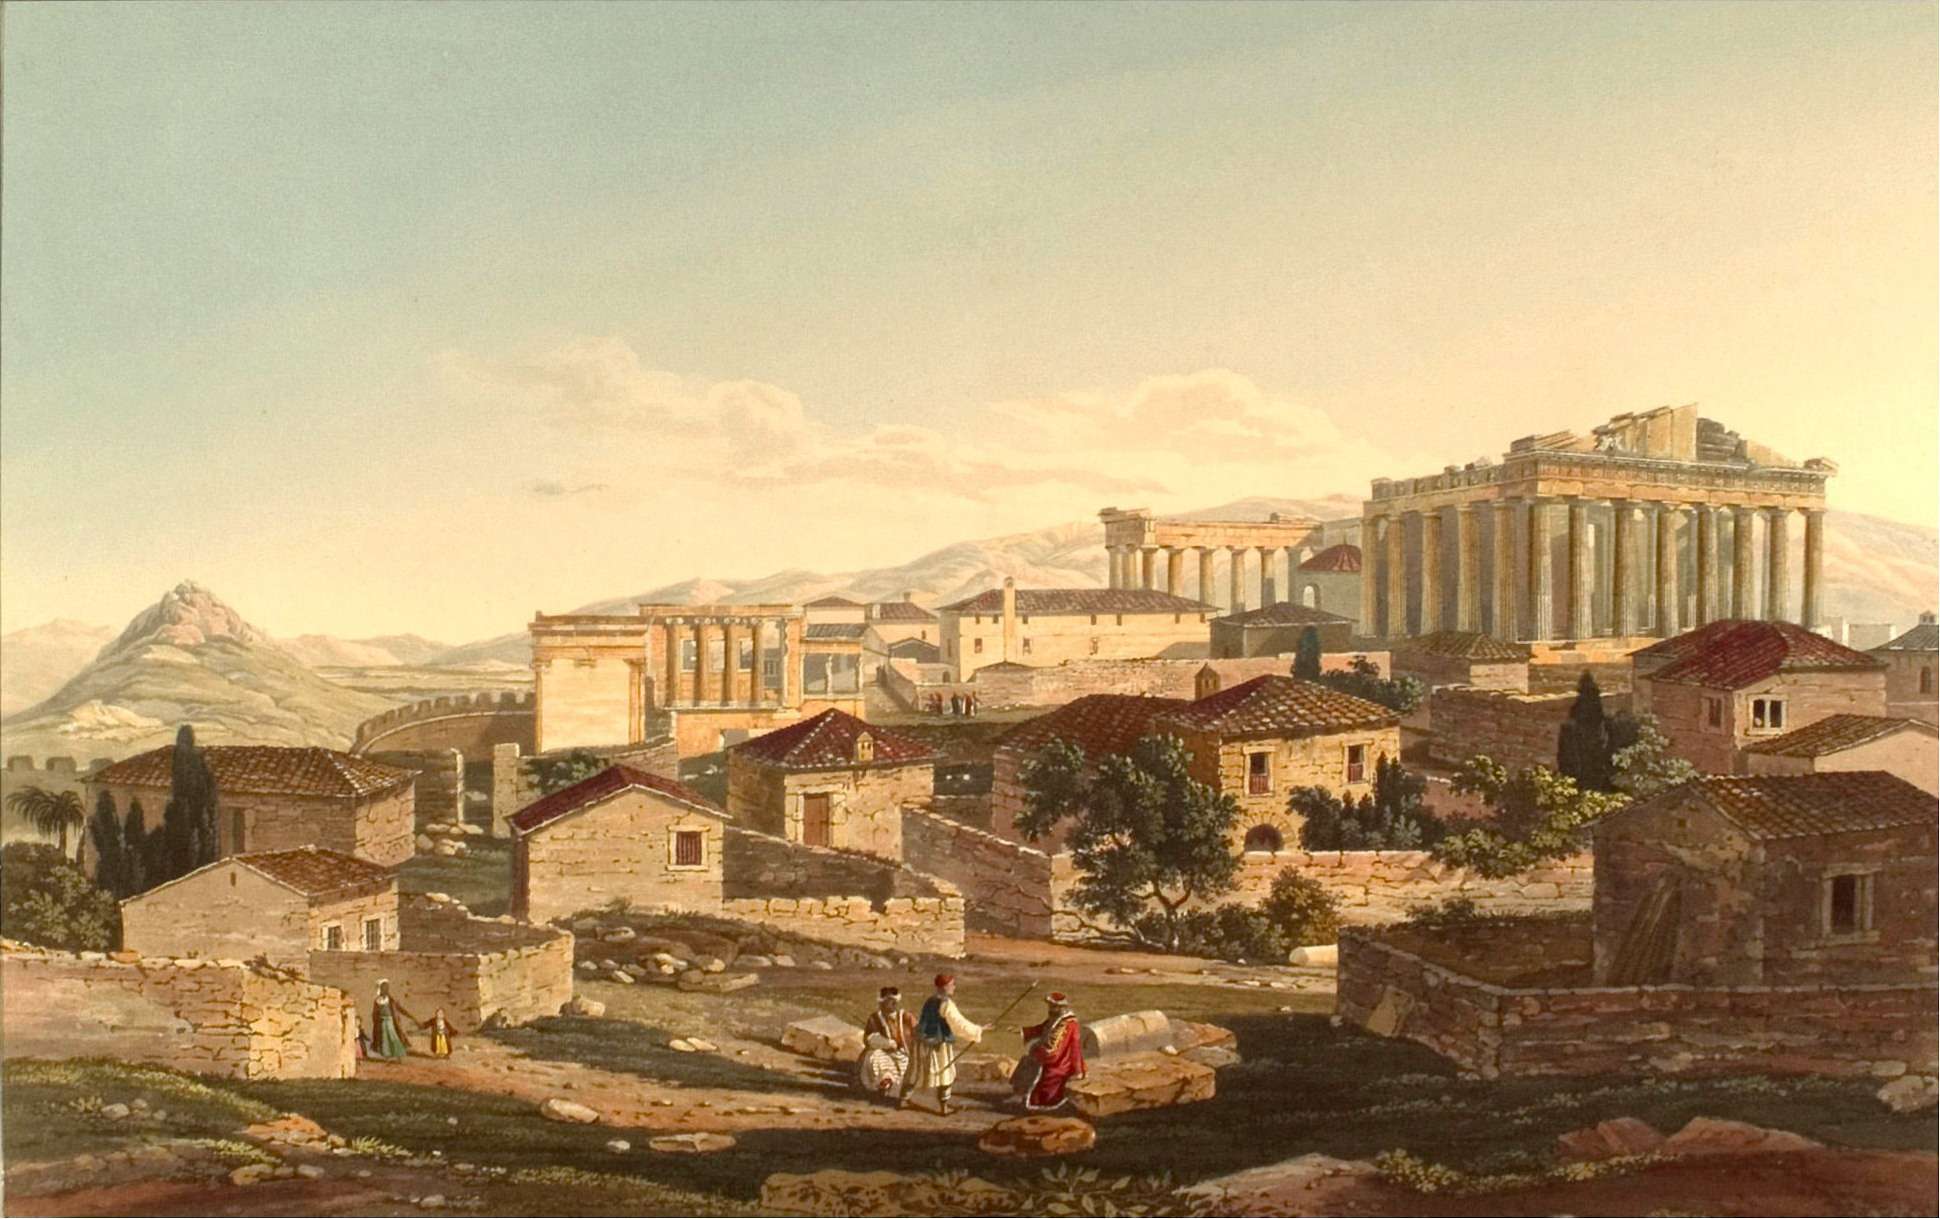 Αθήνα, ο Παρθενώνας στα 1821. Edward Dodwell: Views in Greece, London 1821